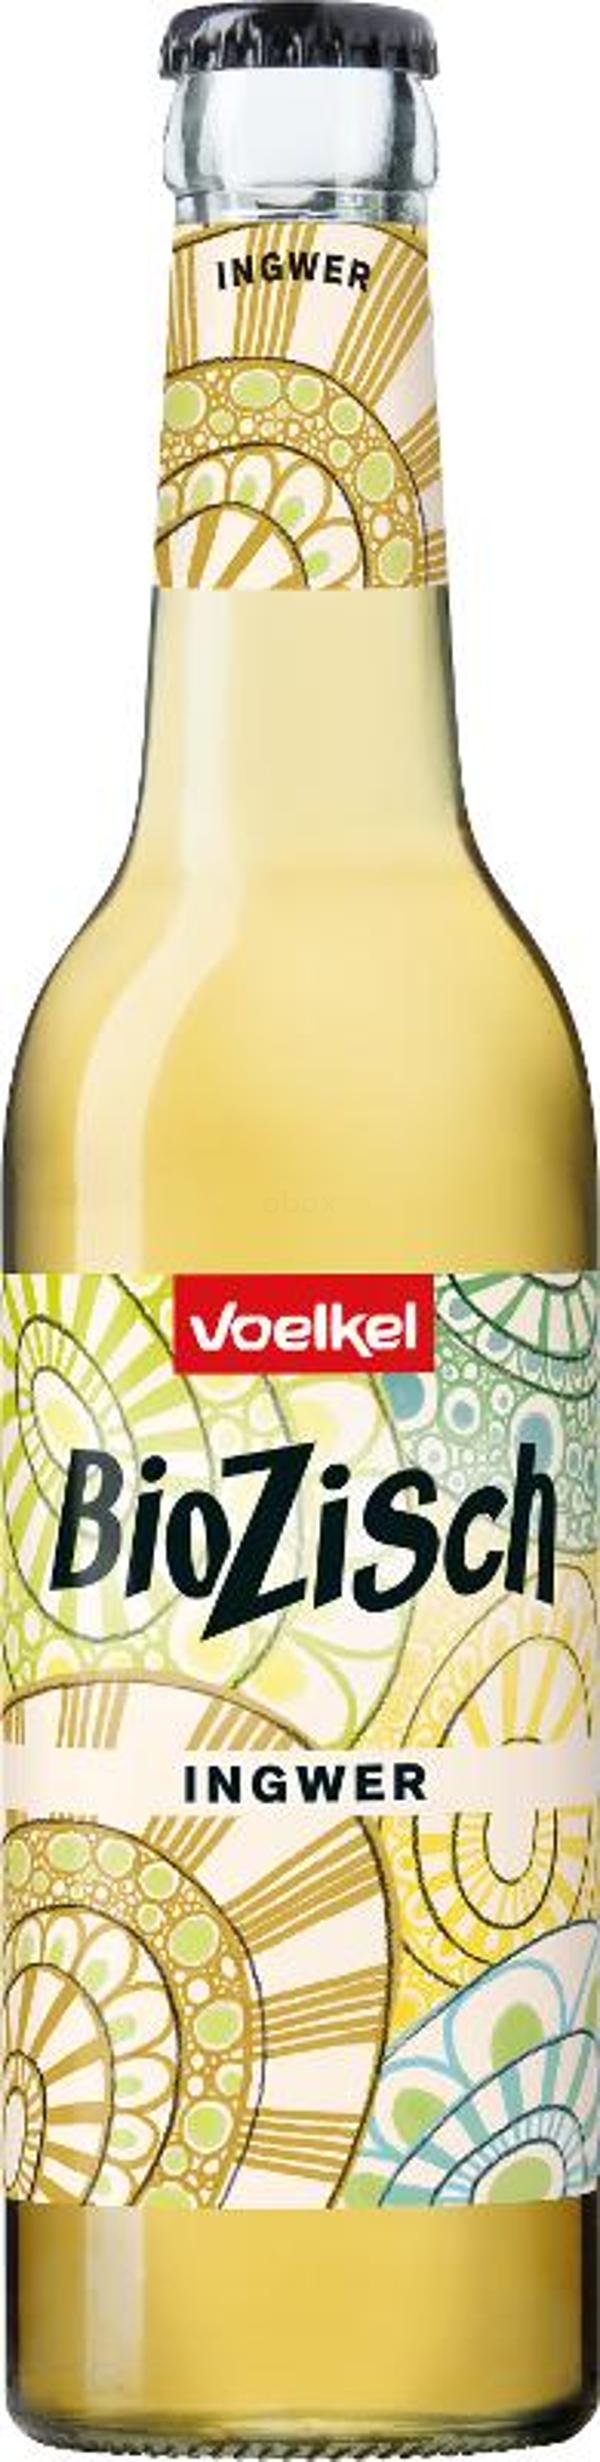 Produktfoto zu Bio Zisch Ingwer 12x0,3l